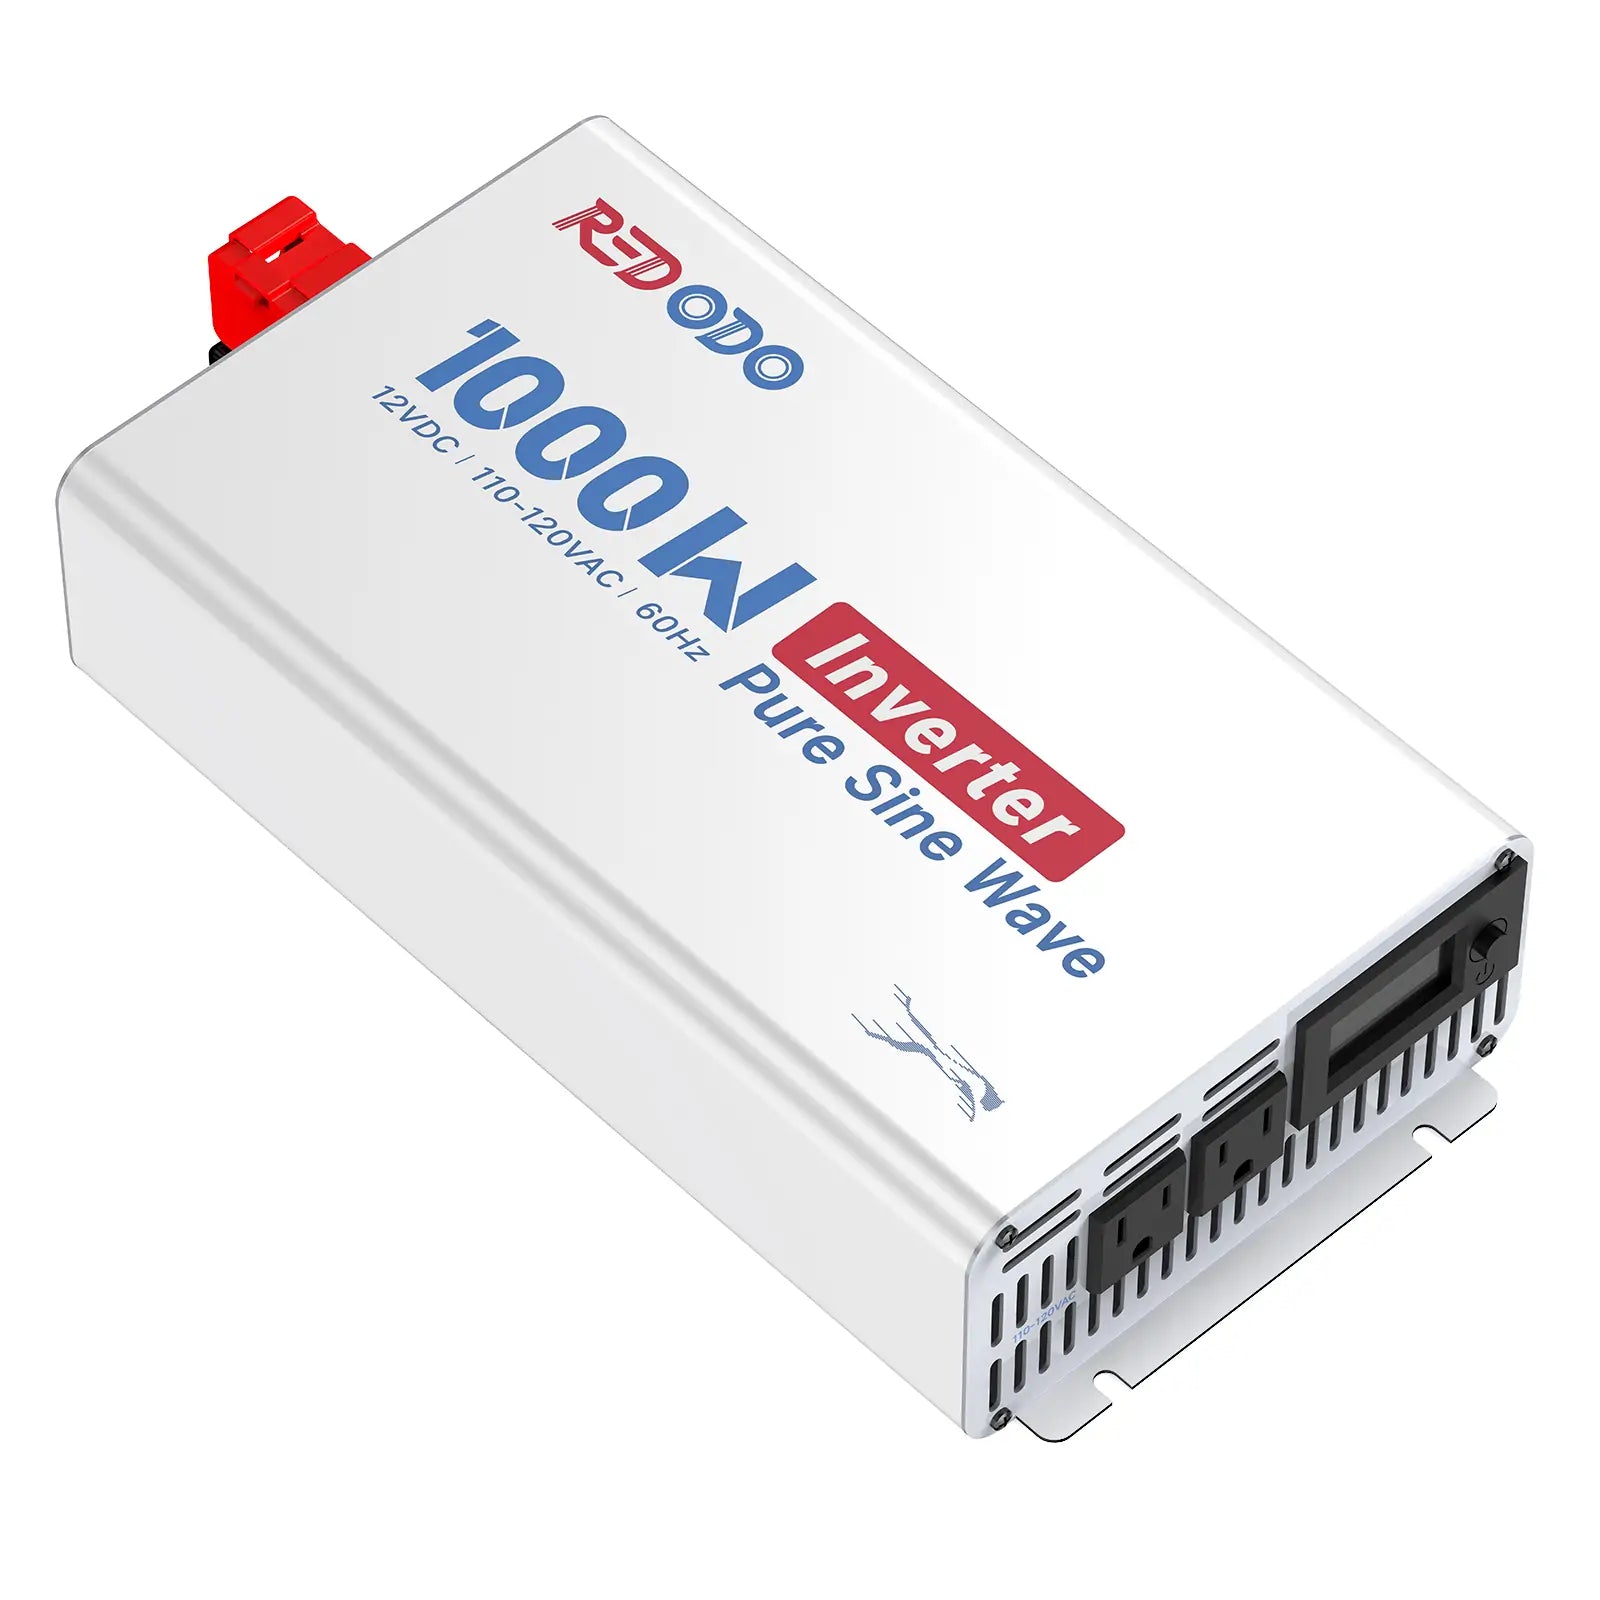 Redodo 14.6V 20A Lifepo4 battery charger - Redodo Power